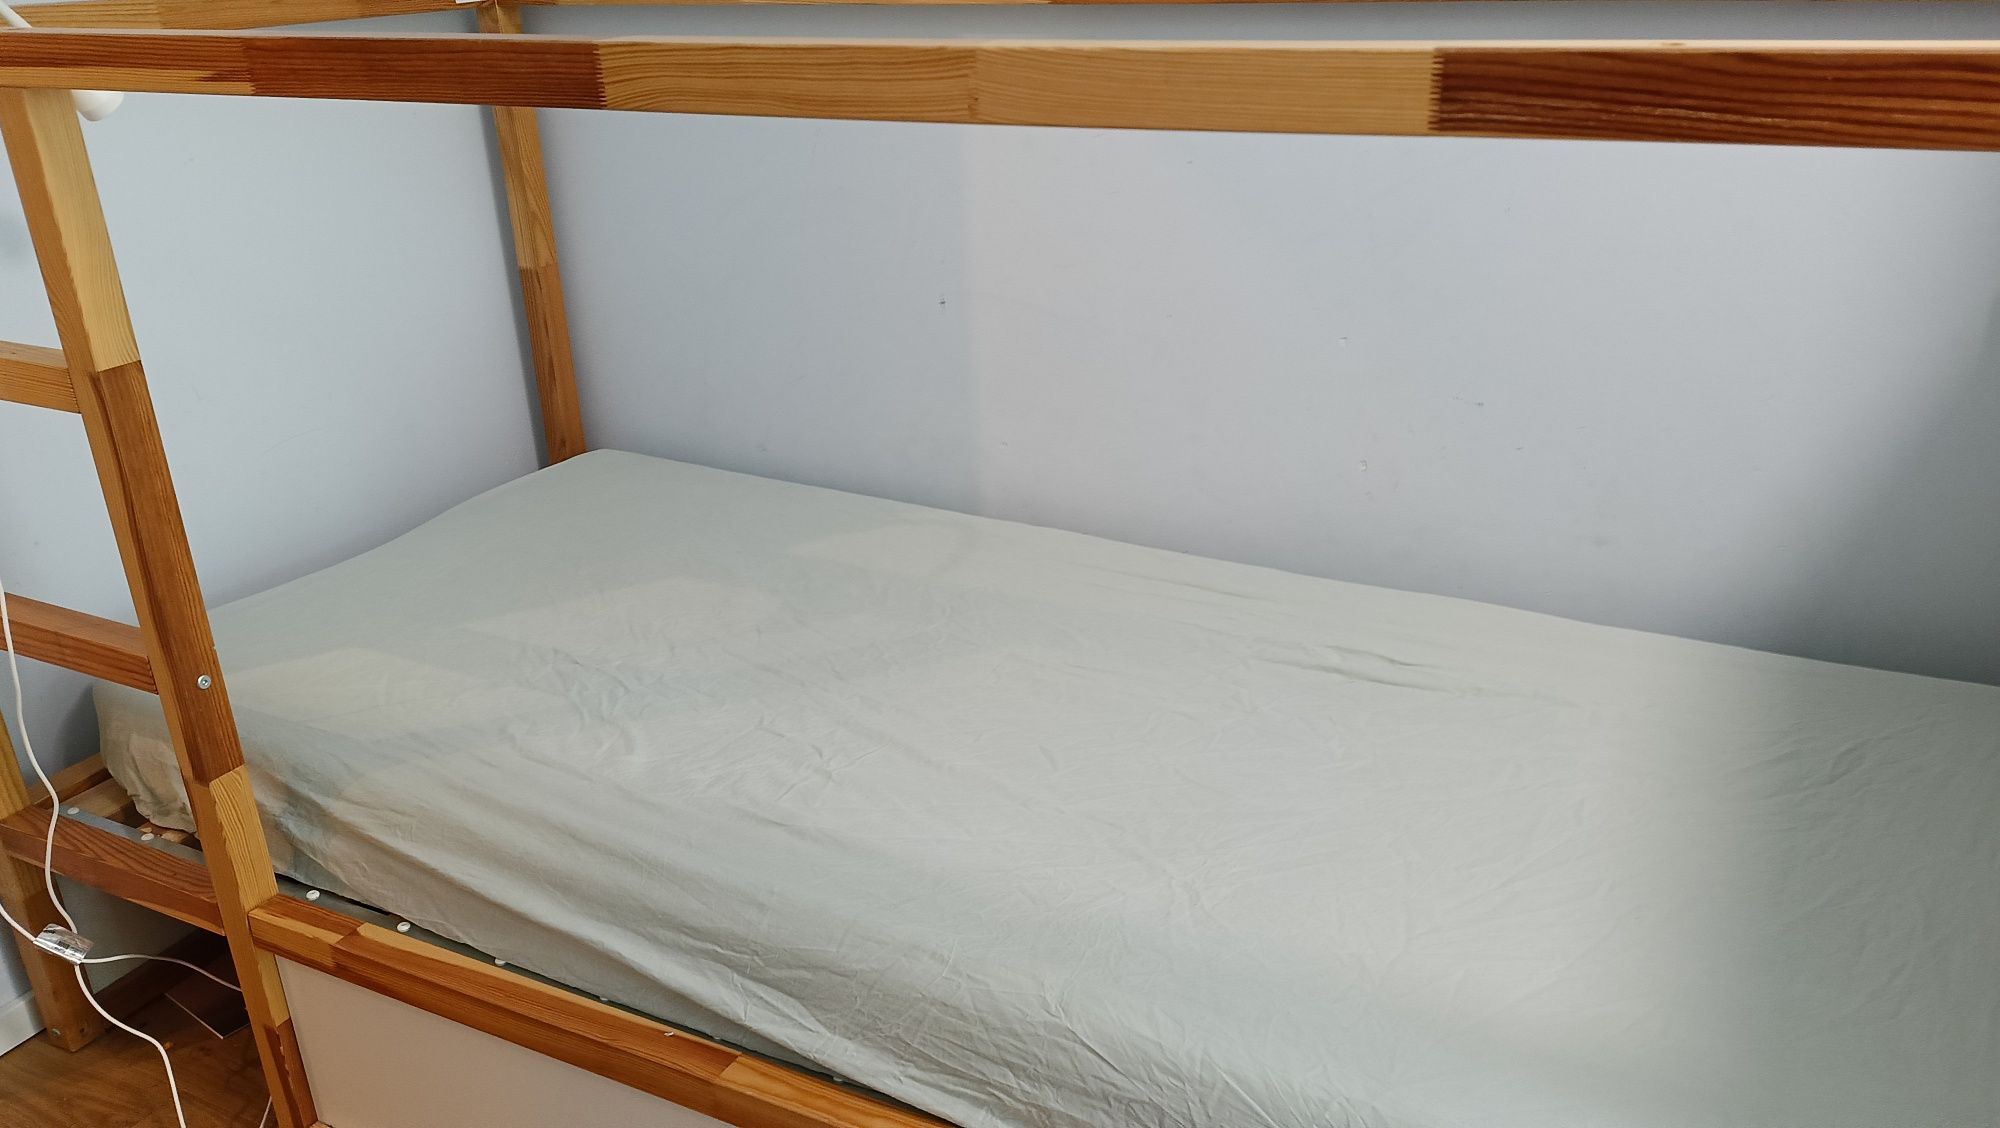 Łóżko KURA Ikea stan bdb (w sklepie za 899 zł)